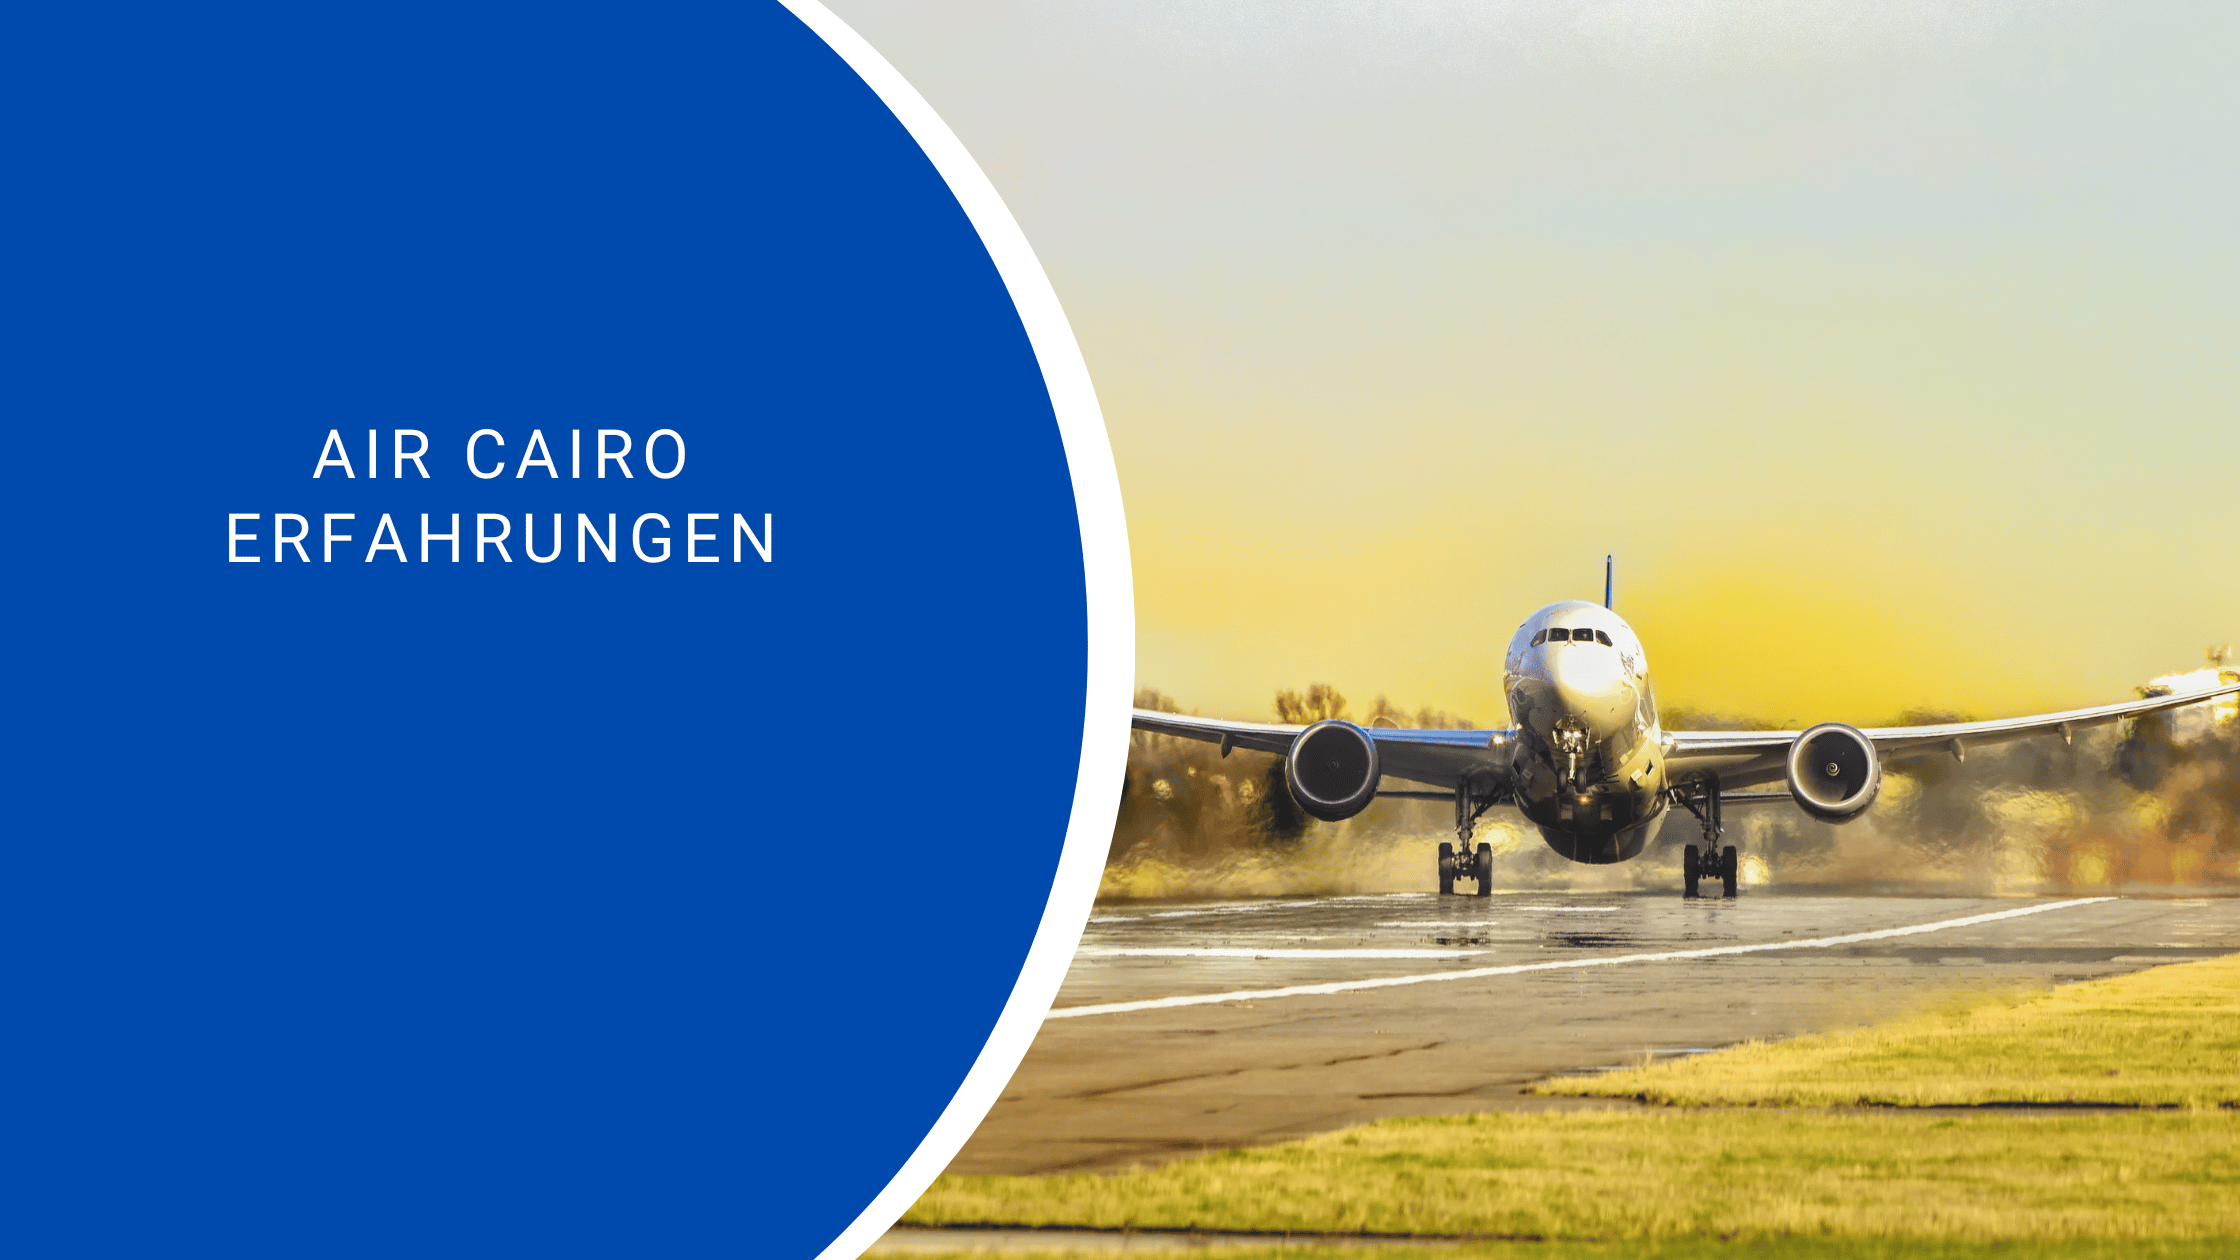 Air Cairo Erfahrungen